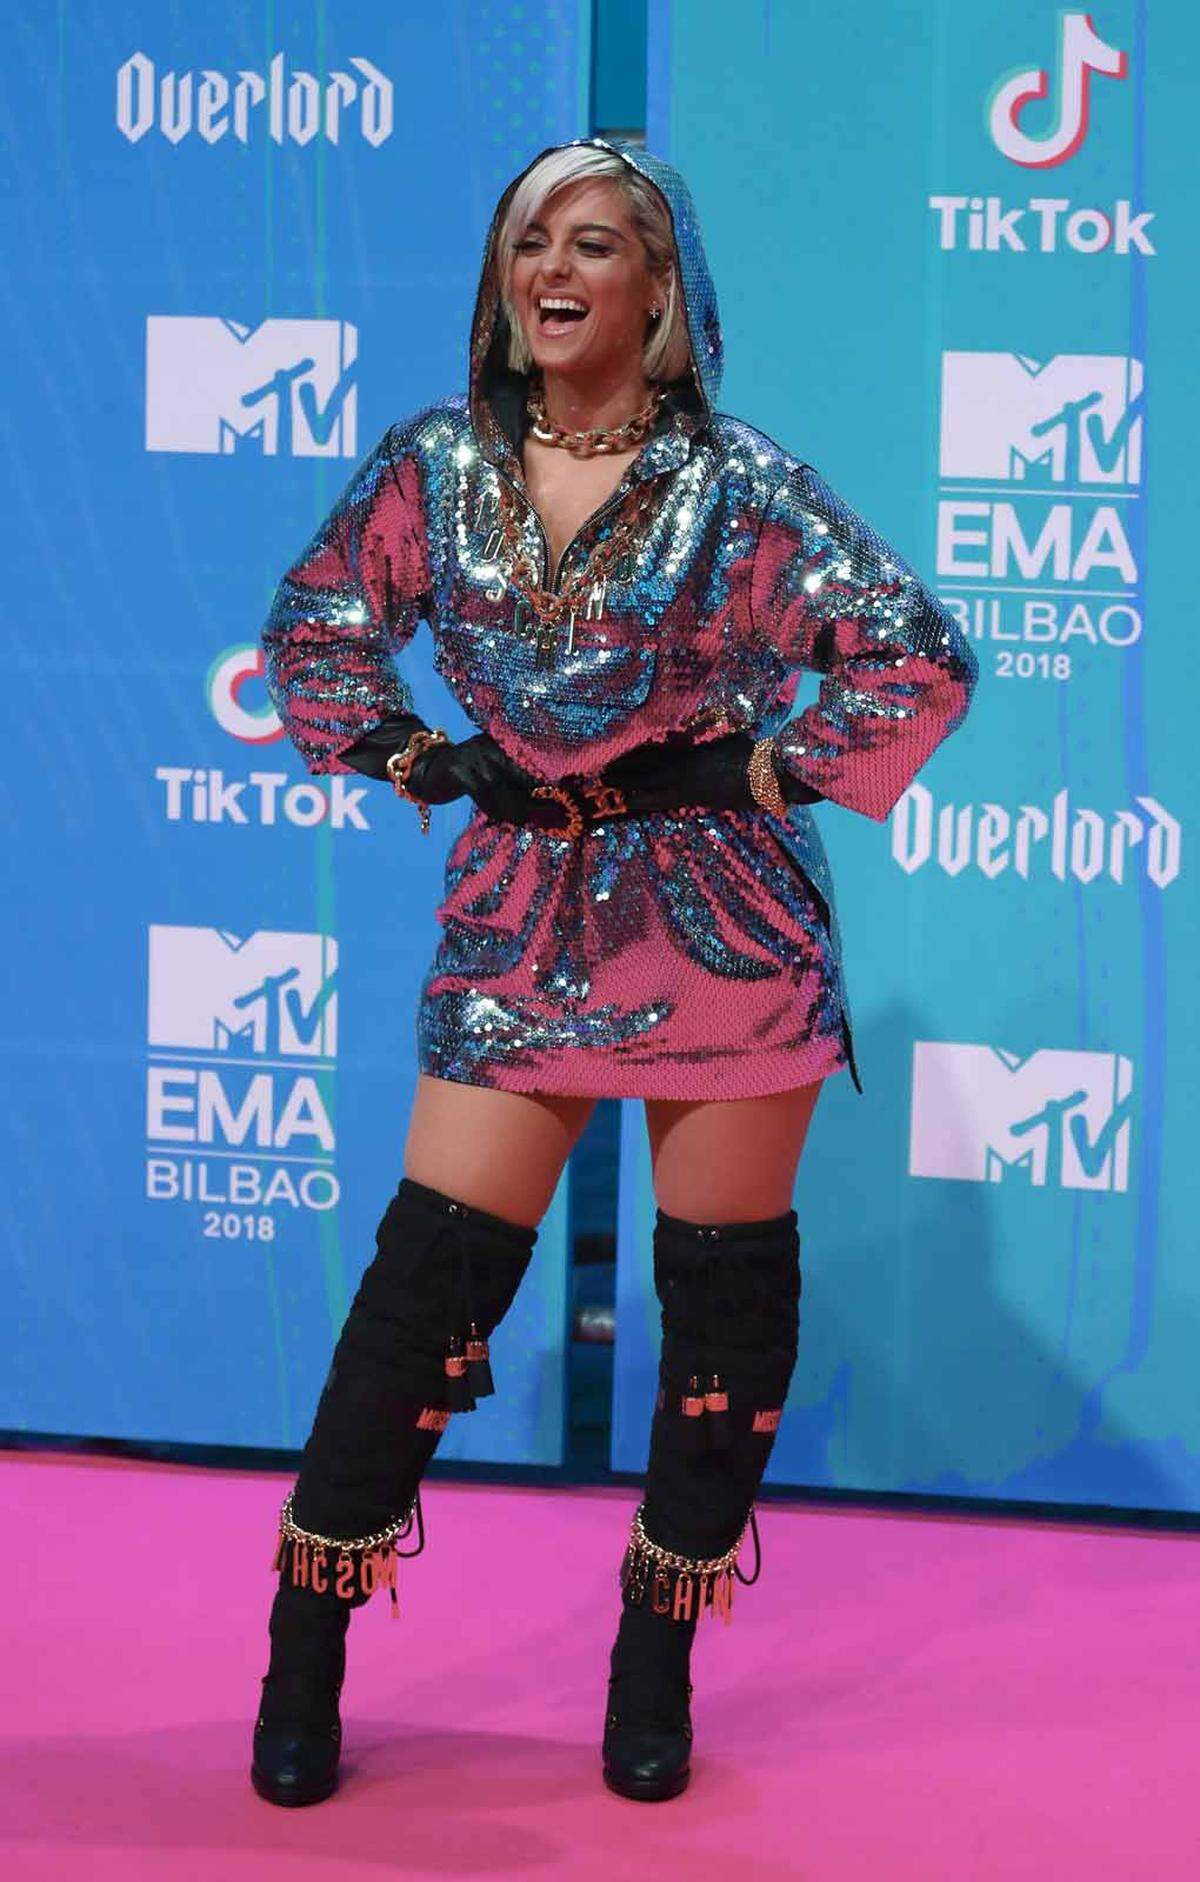 Die US-amerikanische Popsängerin Bebe Rexha in einem Disko-Look von Moschino.